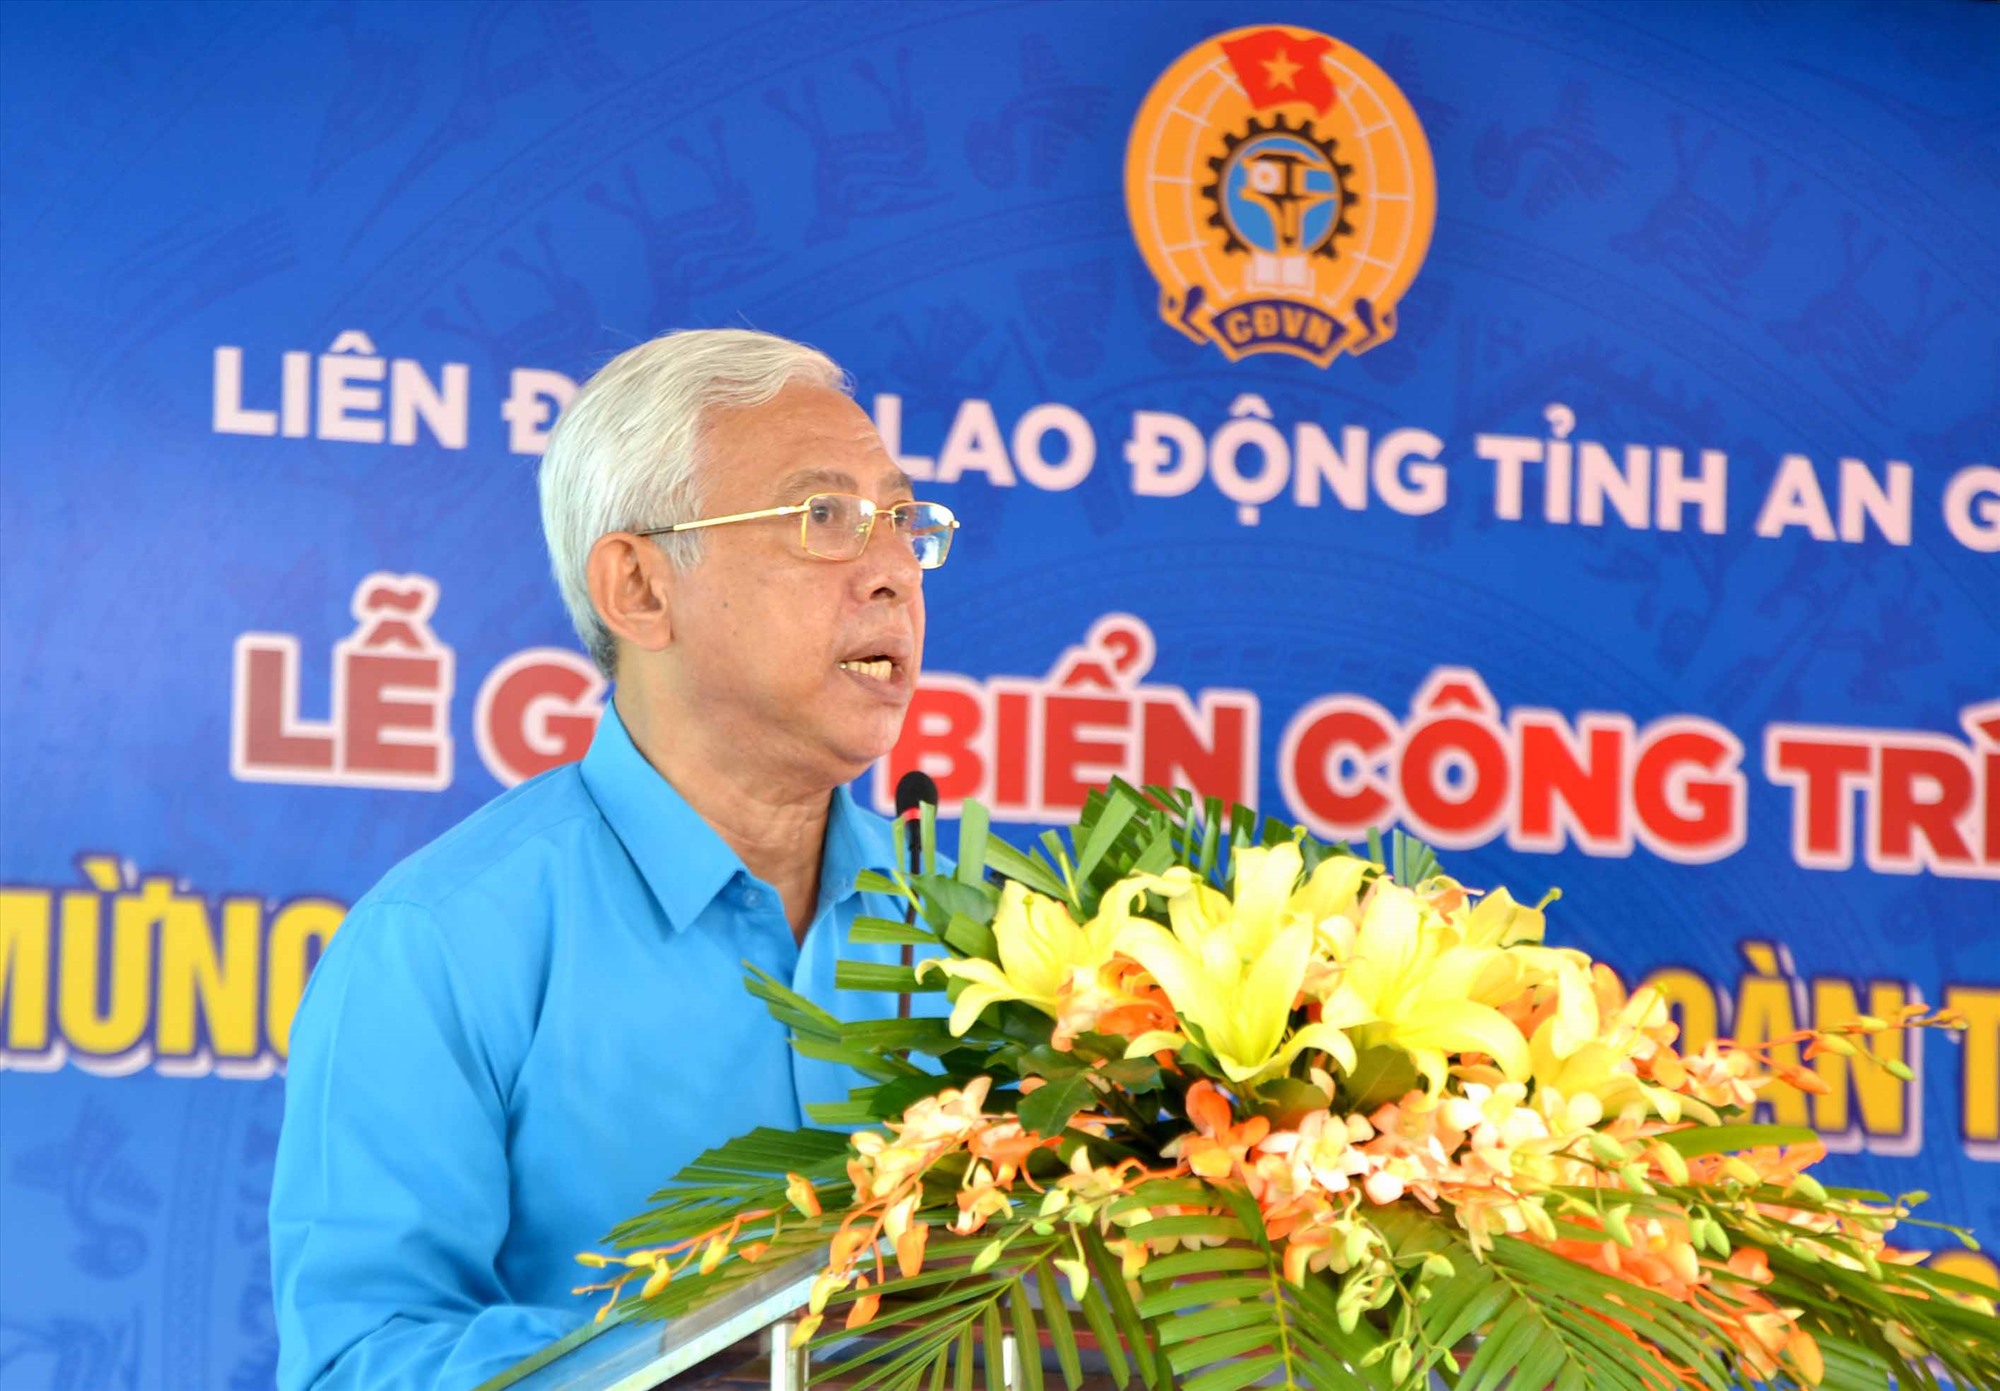 Chủ tịch LĐLĐ tỉnh An Giang phát biểu tại buổi lễ. Ảnh: Lâm Điền